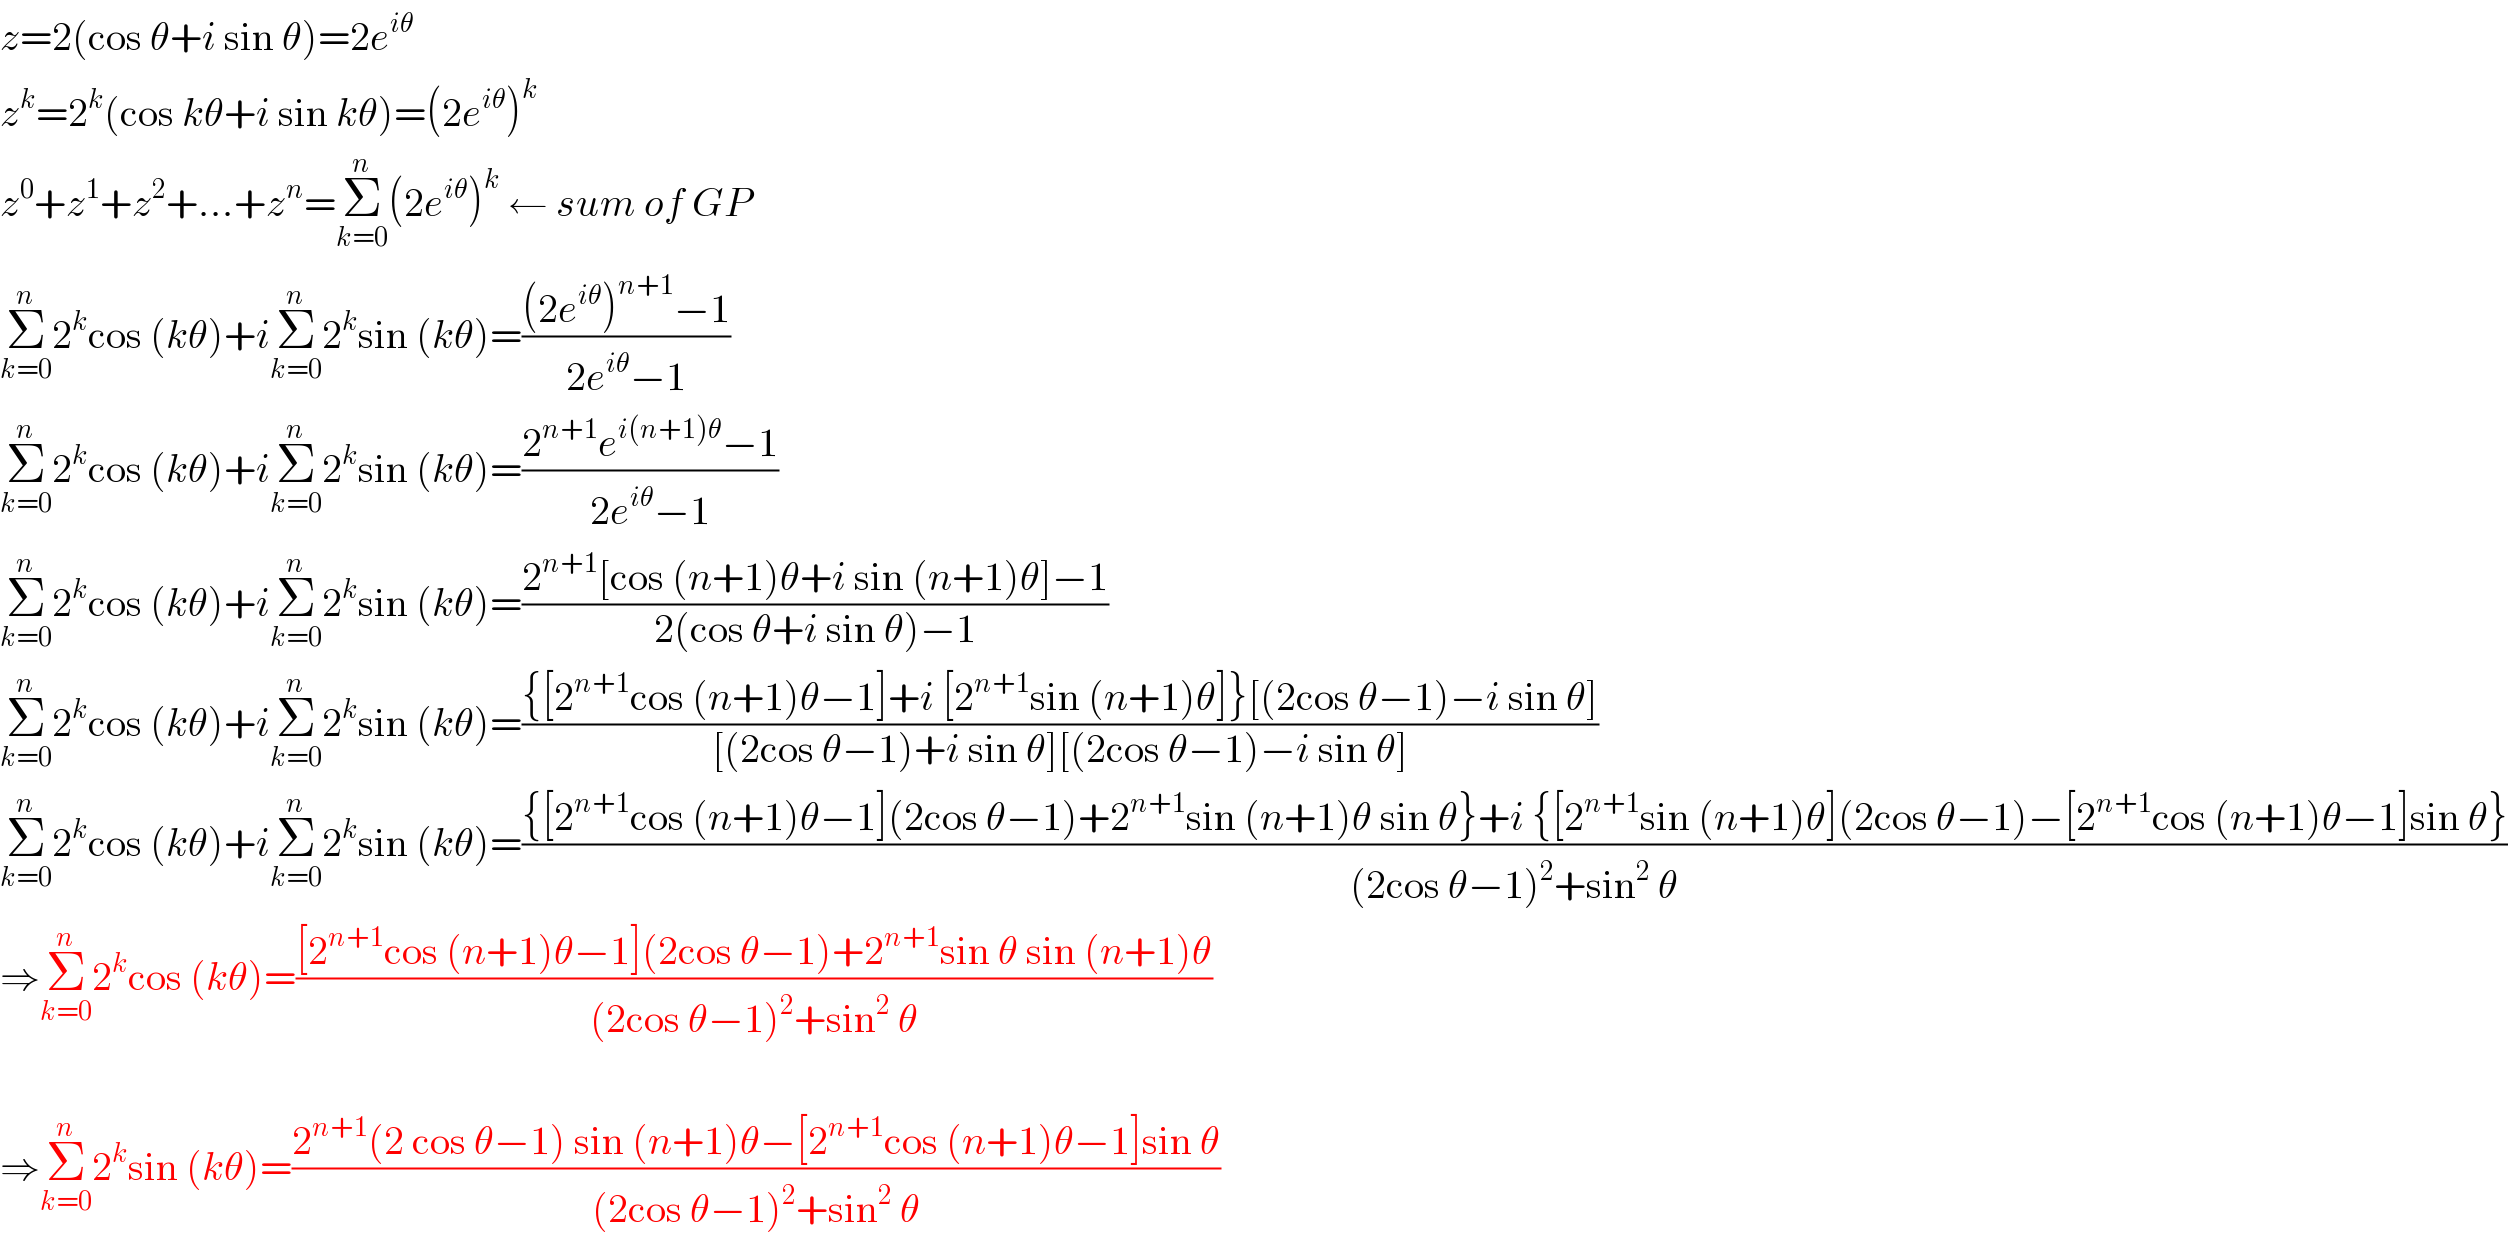 z=2(cos θ+i sin θ)=2e^(iθ)   z^k =2^k (cos kθ+i sin kθ)=(2e^(iθ) )^k   z^0 +z^1 +z^2 +...+z^n =Σ_(k=0) ^n (2e^(iθ) )^k  ← sum of GP  Σ_(k=0) ^n 2^k cos (kθ)+iΣ_(k=0) ^n 2^k sin (kθ)=(((2e^(iθ) )^(n+1) −1)/(2e^(iθ) −1))  Σ_(k=0) ^n 2^k cos (kθ)+iΣ_(k=0) ^n 2^k sin (kθ)=((2^(n+1) e^(i(n+1)θ) −1)/(2e^(iθ) −1))  Σ_(k=0) ^n 2^k cos (kθ)+iΣ_(k=0) ^n 2^k sin (kθ)=((2^(n+1) [cos (n+1)θ+i sin (n+1)θ]−1)/(2(cos θ+i sin θ)−1))  Σ_(k=0) ^n 2^k cos (kθ)+iΣ_(k=0) ^n 2^k sin (kθ)=(({[2^(n+1) cos (n+1)θ−1]+i [2^(n+1) sin (n+1)θ]}[(2cos θ−1)−i sin θ])/([(2cos θ−1)+i sin θ][(2cos θ−1)−i sin θ]))  Σ_(k=0) ^n 2^k cos (kθ)+iΣ_(k=0) ^n 2^k sin (kθ)=(({[2^(n+1) cos (n+1)θ−1](2cos θ−1)+2^(n+1) sin (n+1)θ sin θ}+i {[2^(n+1) sin (n+1)θ](2cos θ−1)−[2^(n+1) cos (n+1)θ−1]sin θ})/((2cos θ−1)^2 +sin^2  θ))  ⇒Σ_(k=0) ^n 2^k cos (kθ)=(([2^(n+1) cos (n+1)θ−1](2cos θ−1)+2^(n+1) sin θ sin (n+1)θ)/((2cos θ−1)^2 +sin^2  θ))    ⇒Σ_(k=0) ^n 2^k sin (kθ)=((2^(n+1) (2 cos θ−1) sin (n+1)θ−[2^(n+1) cos (n+1)θ−1]sin θ)/((2cos θ−1)^2 +sin^2  θ))  